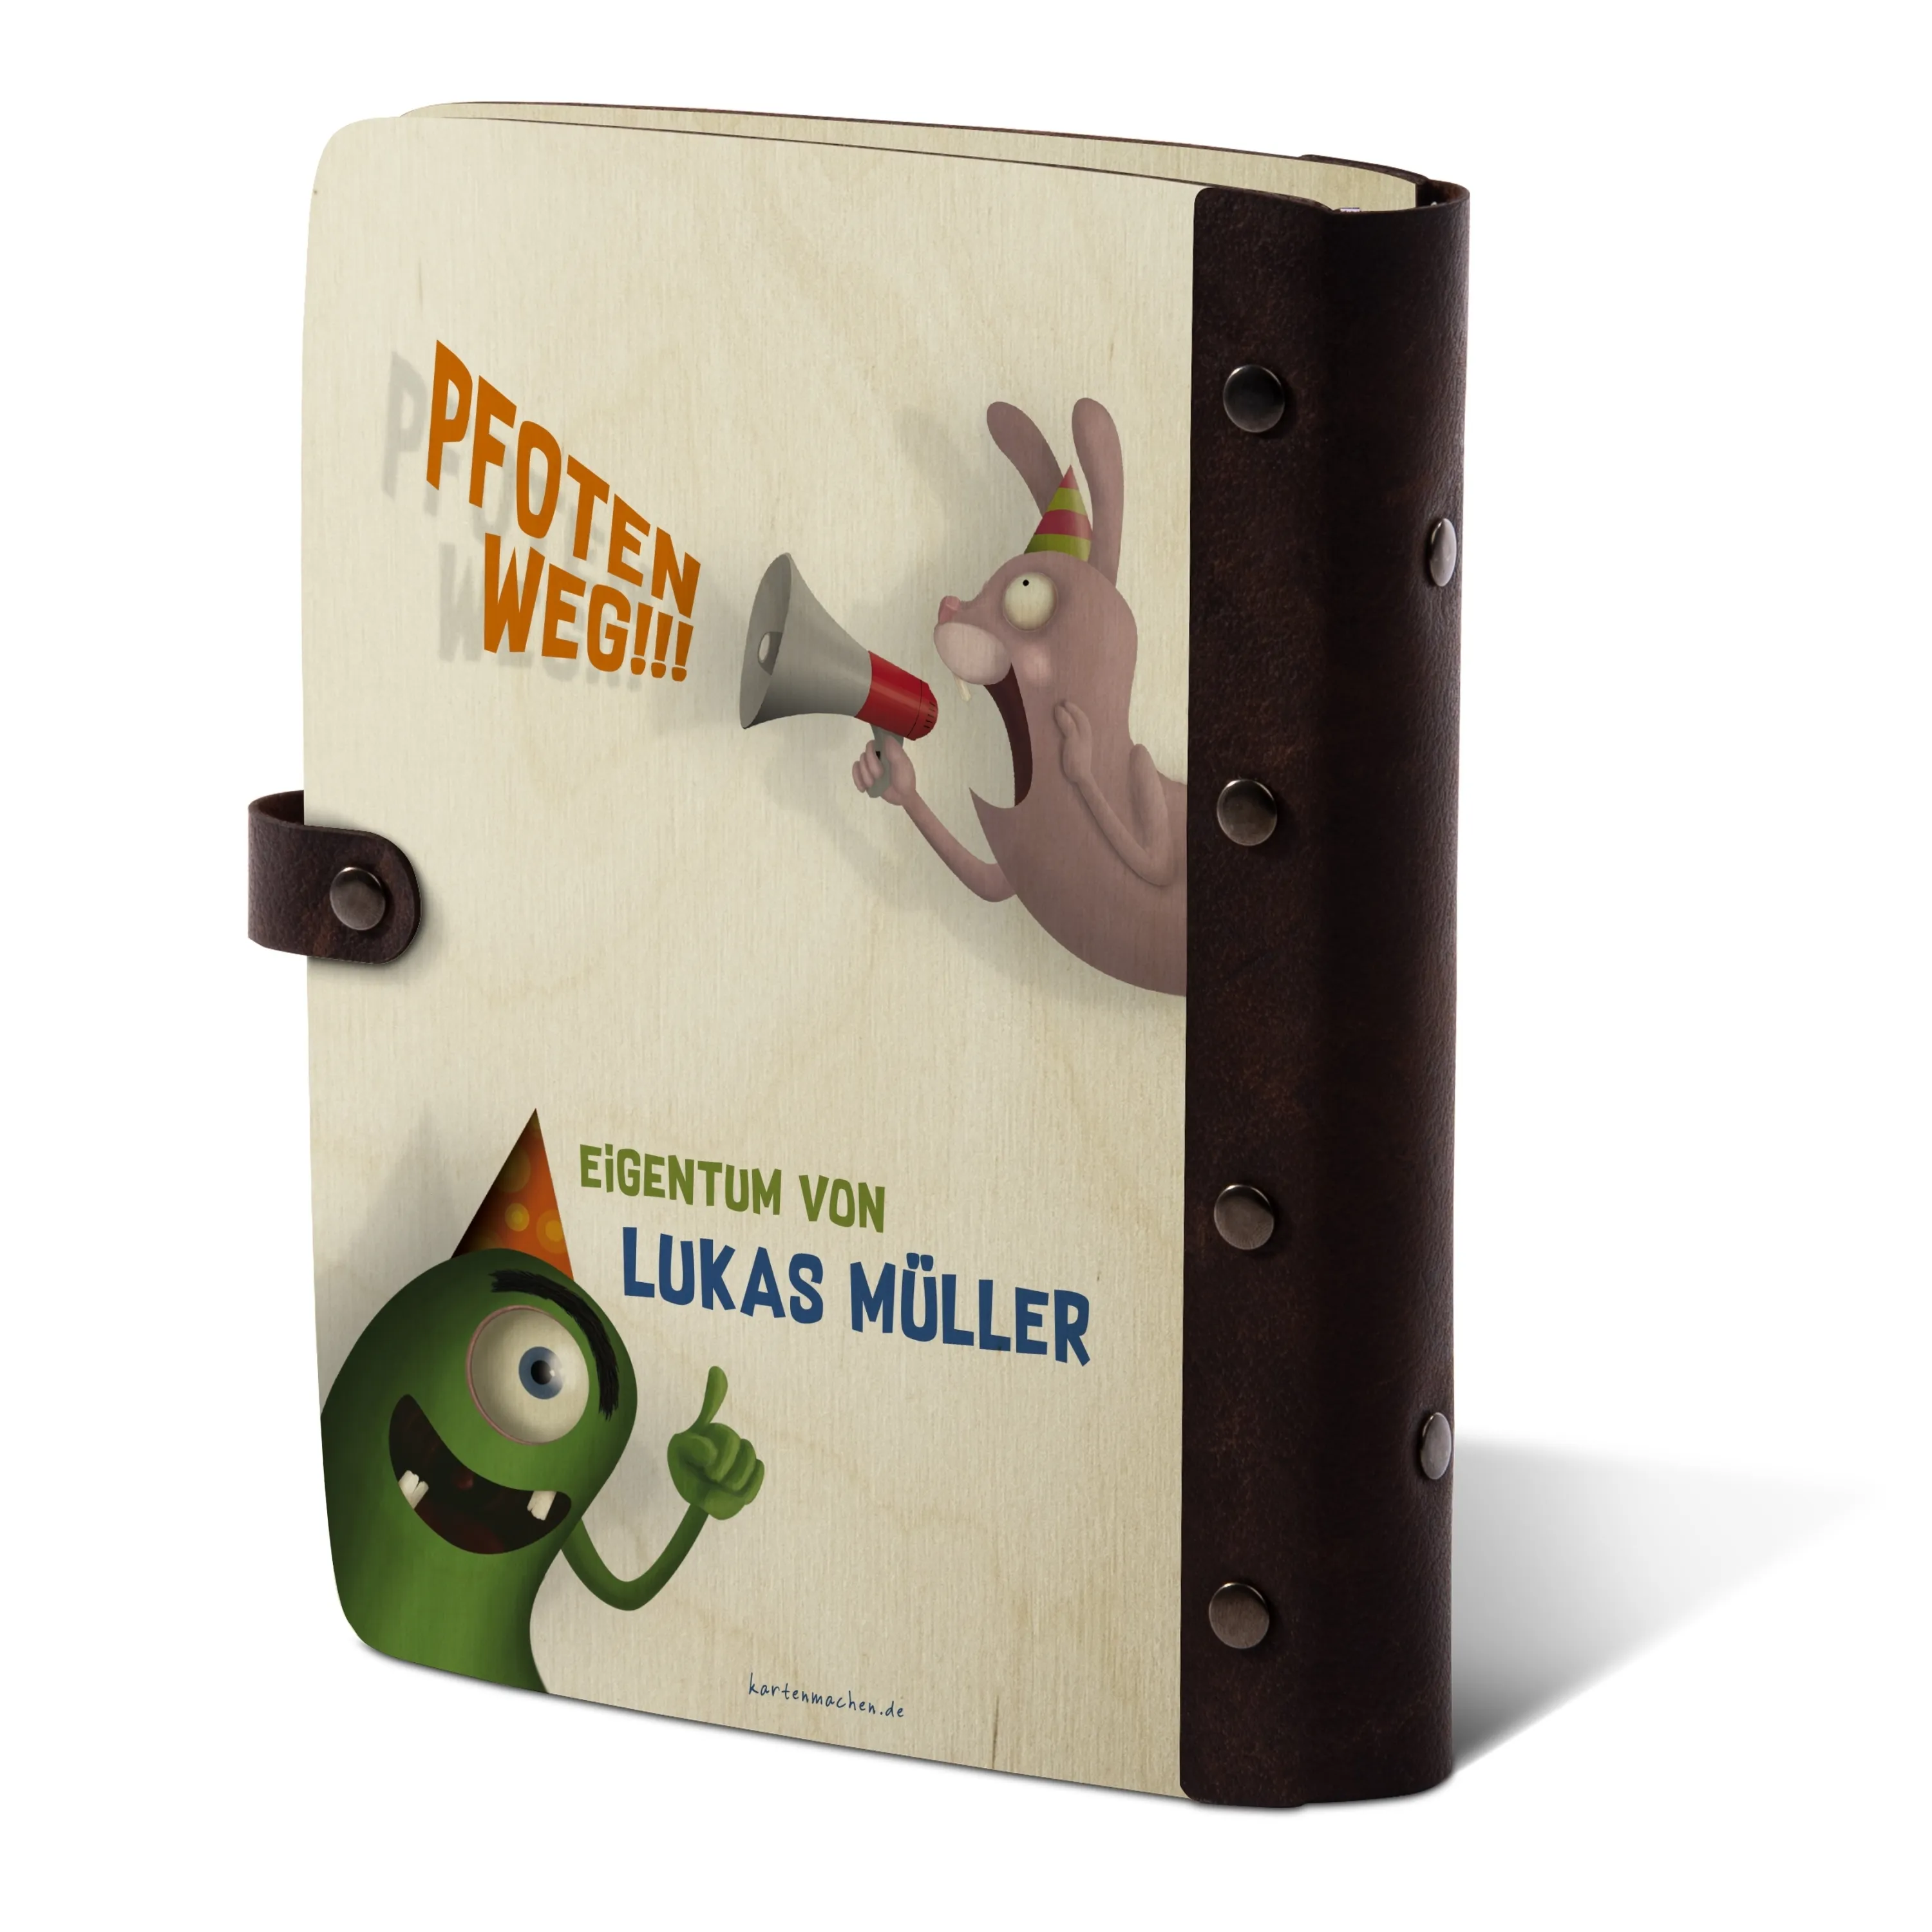 Personalisiertes Notizbuch / Tagebuch Birkensperrholz für Kinder - Monster Freundebuch